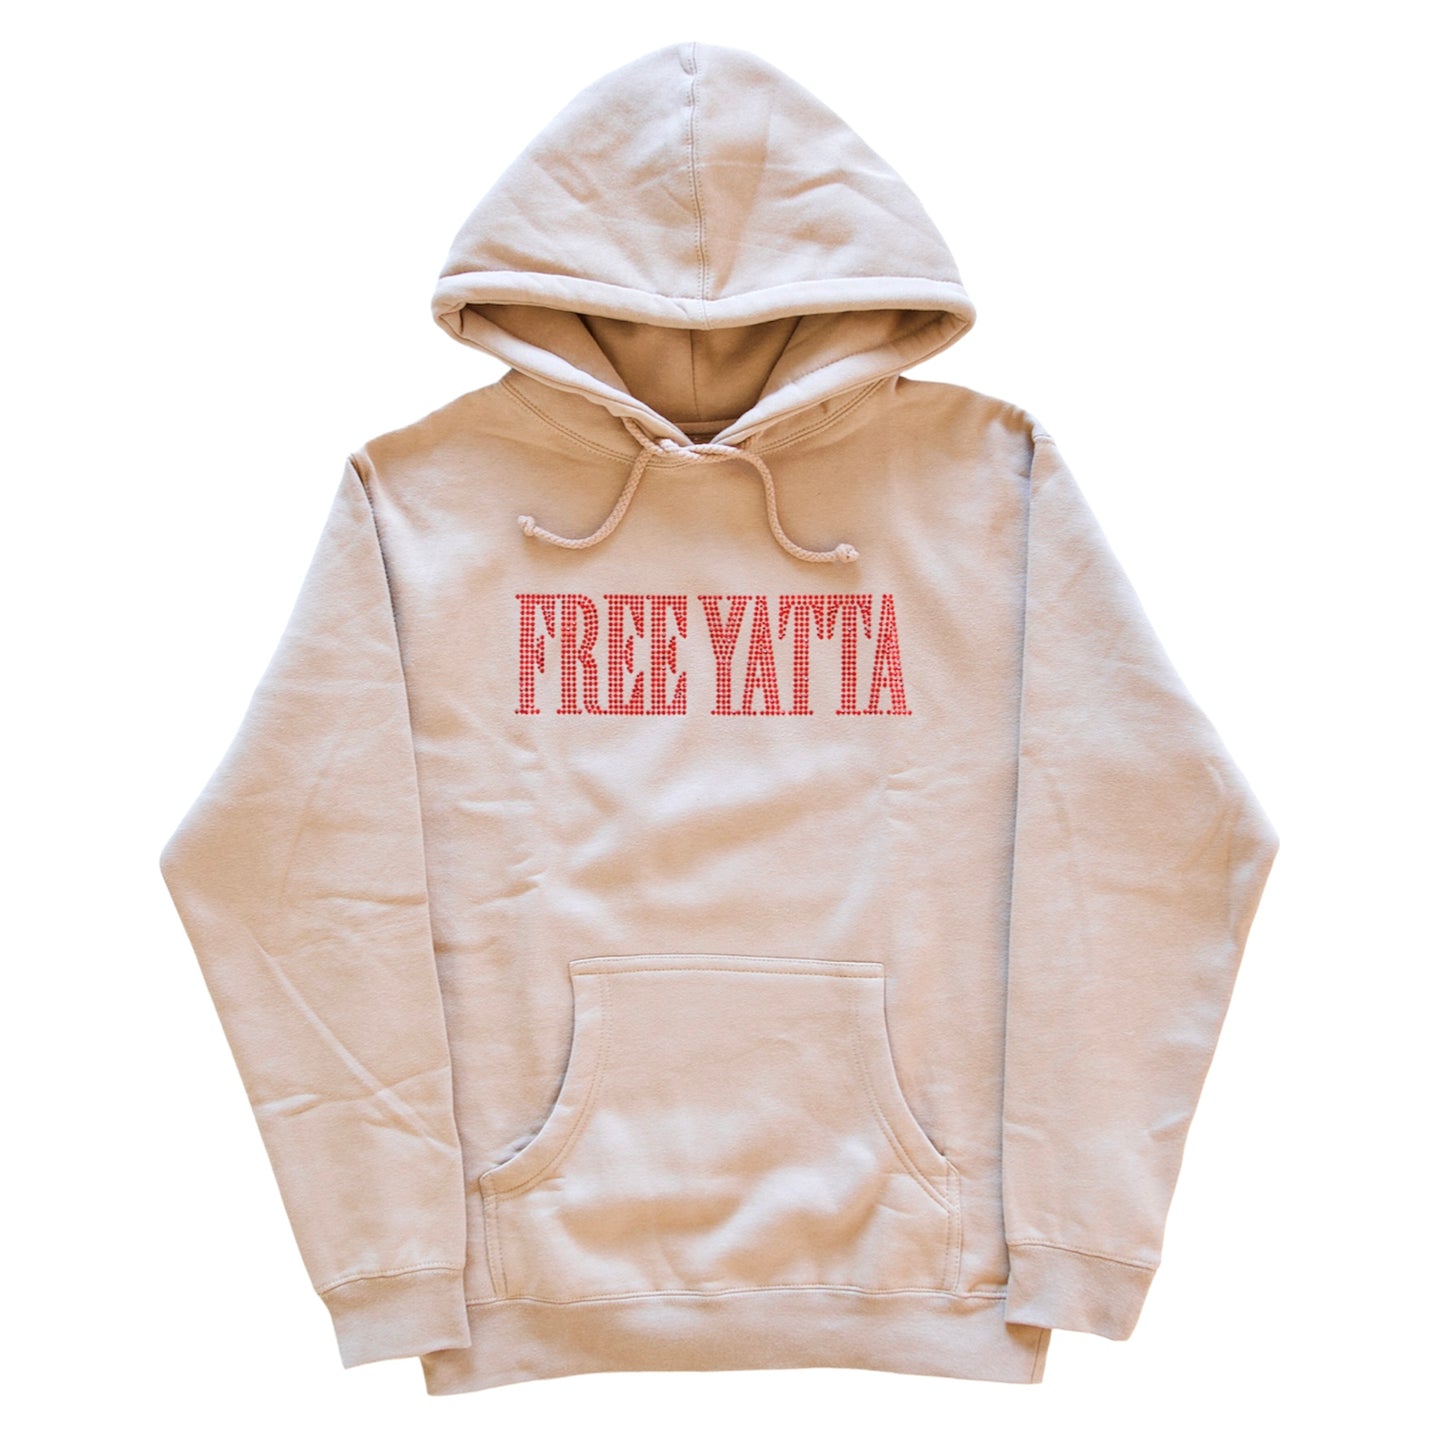 Khaki Rhinestone “Free Yatta” Hoodie